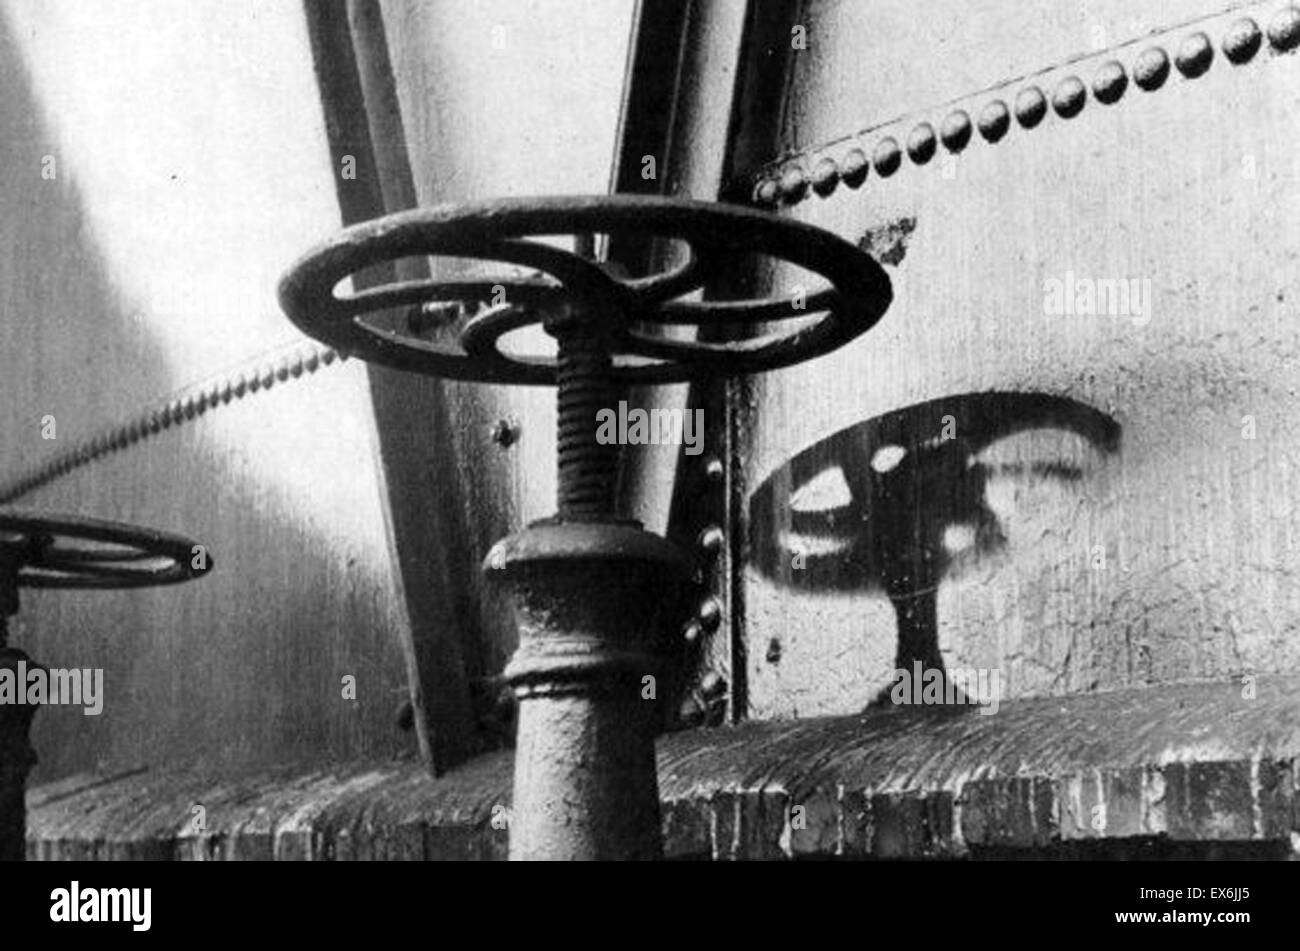 Zweiter Weltkrieg, Schatten eines Wasserhahns auf einer Rohrleitung in Hiroshima nach der Explosion der Atombombe im August 1945 Hiroshima, Japan Stockfoto